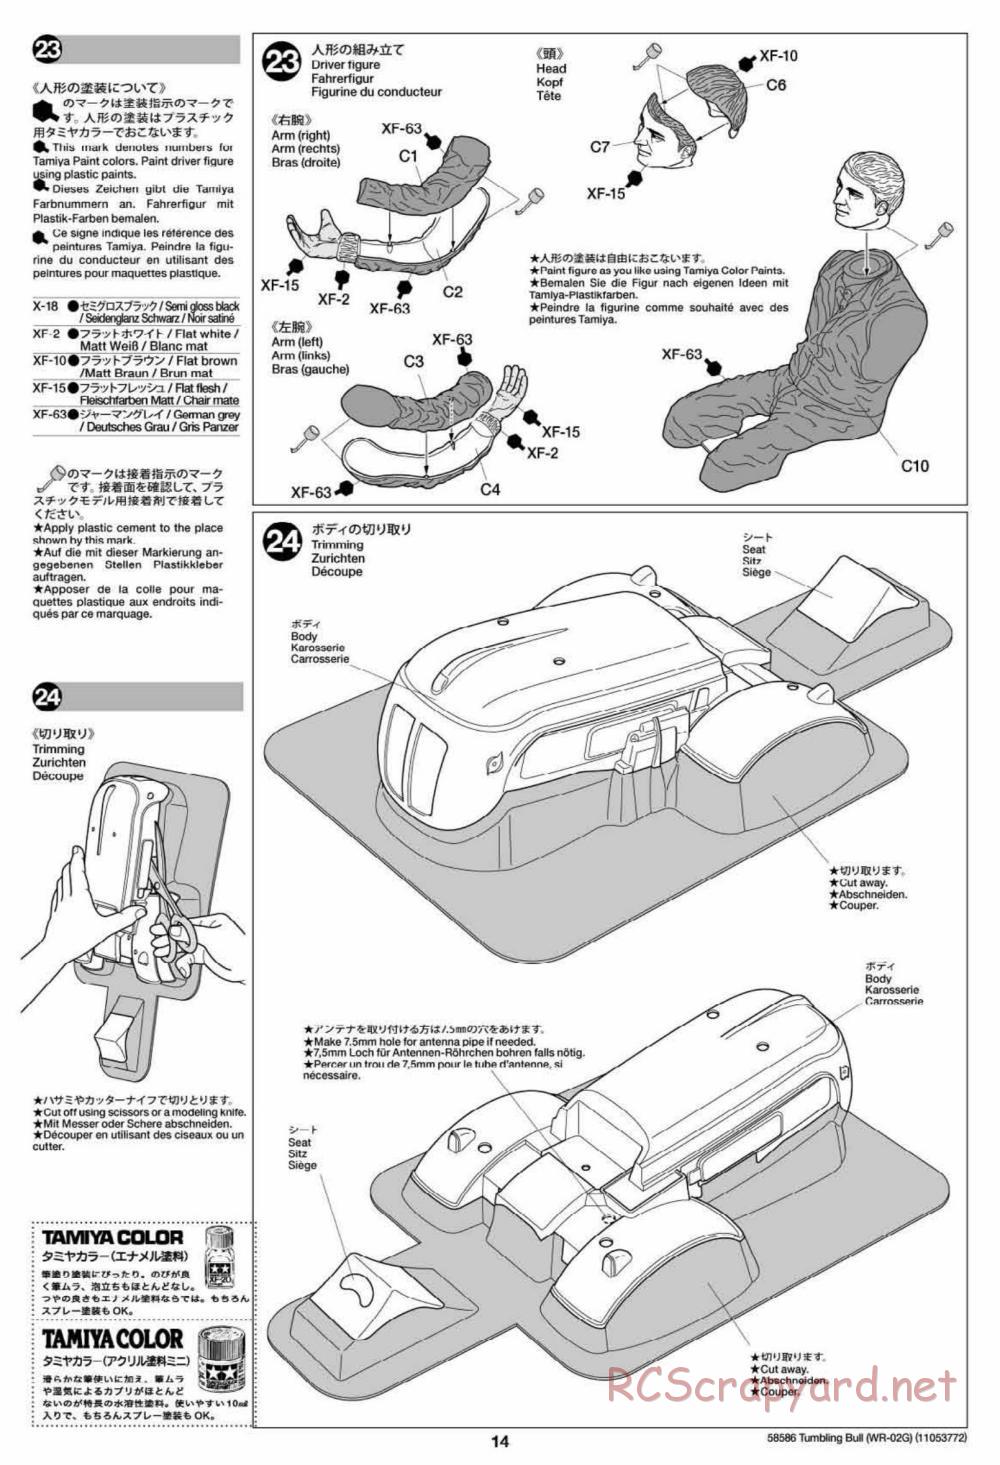 Tamiya - Tumbling Bull Chassis - Manual - Page 14